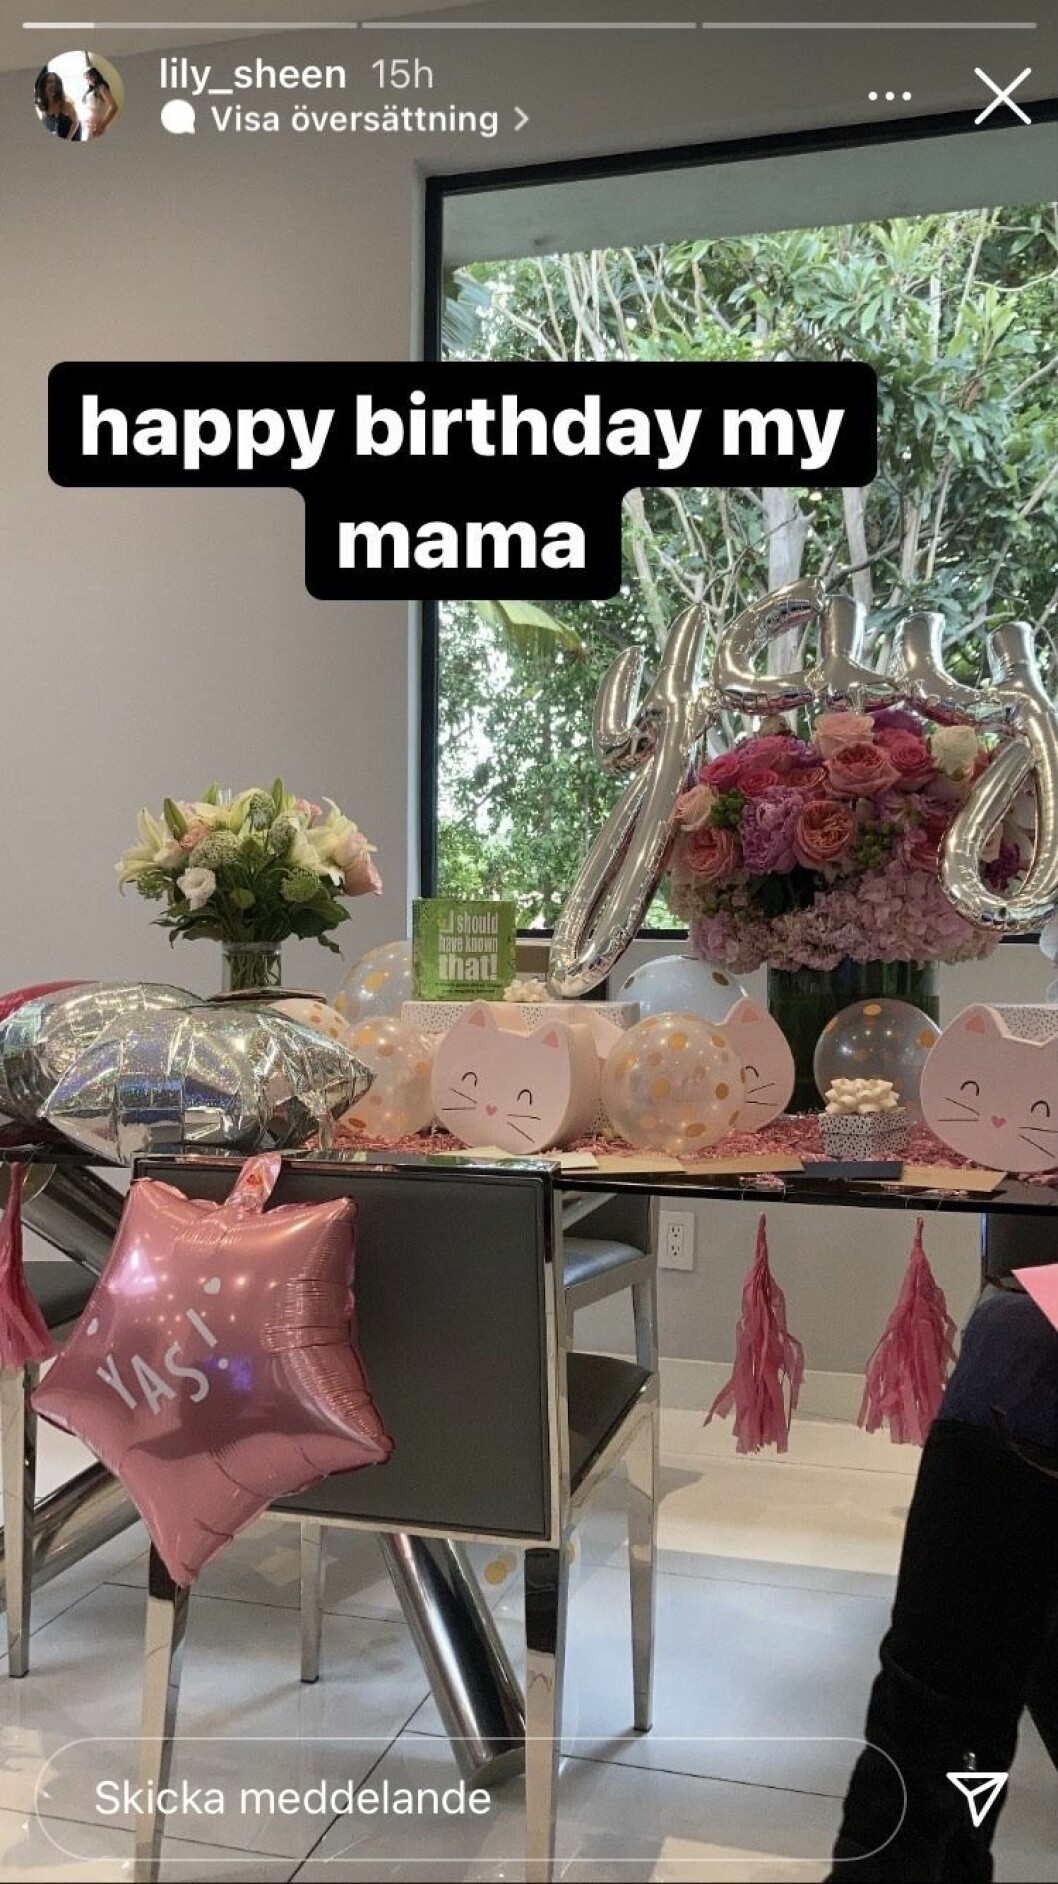 Lily Sheen firade mamma Kate Beckinsales födelsedag.